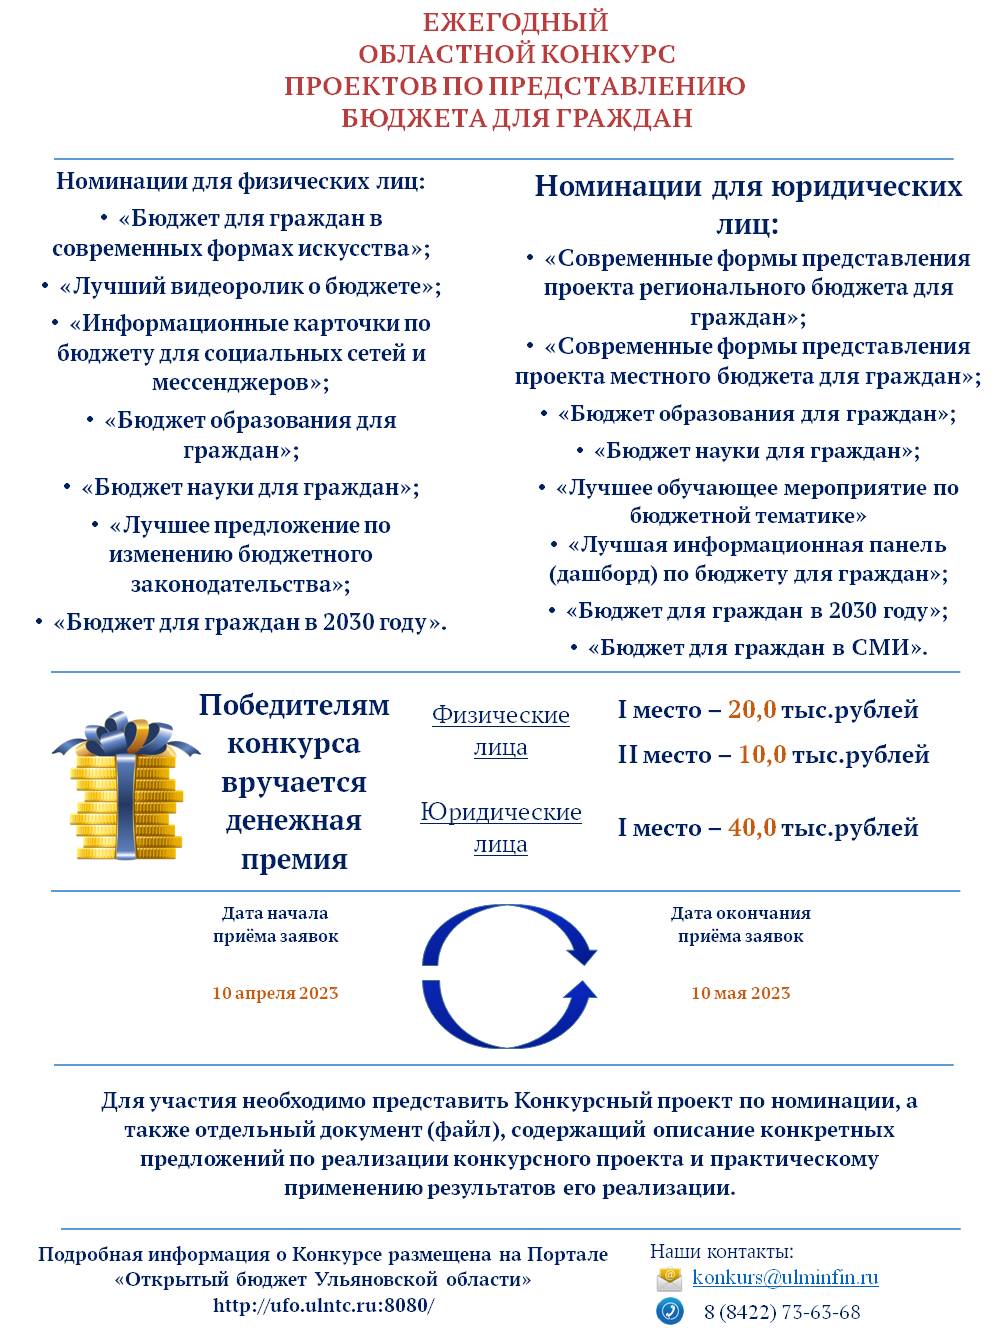 Министерство финансов Ульяновской области проводит ежегодный областной конкурс проектов по представлению бюджета для граждан. Его основная цель – вовлечение населения в бюджетный процесс и открытость данных, выявление лучших форм и способов информирования